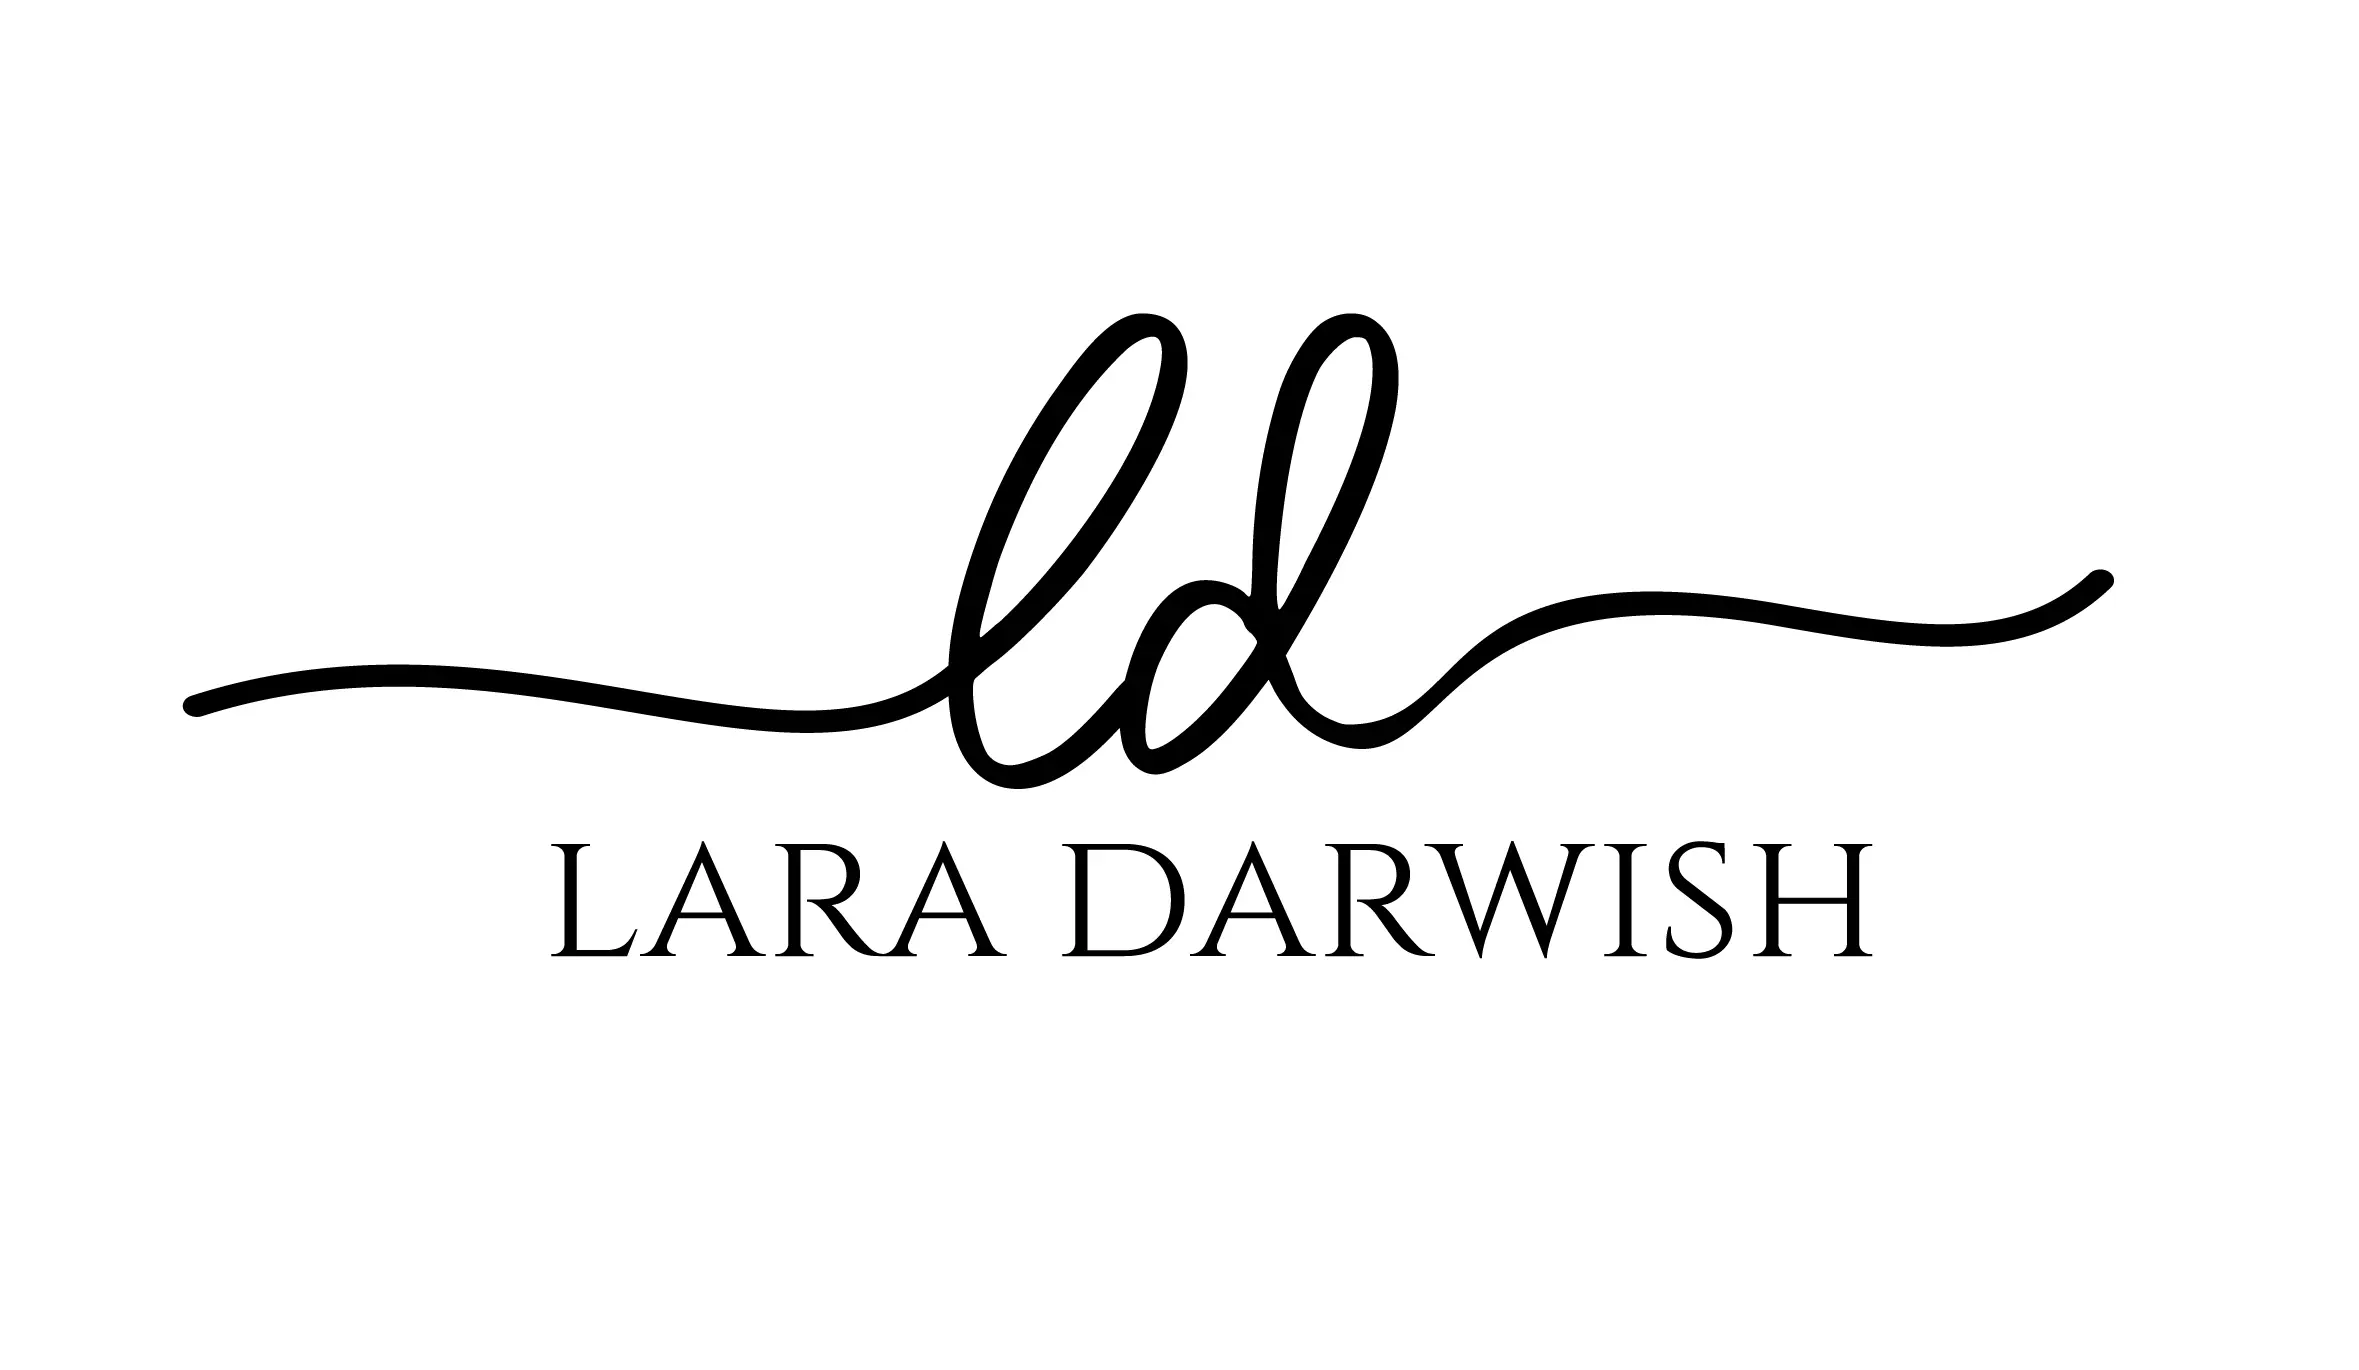 Lara Darwish